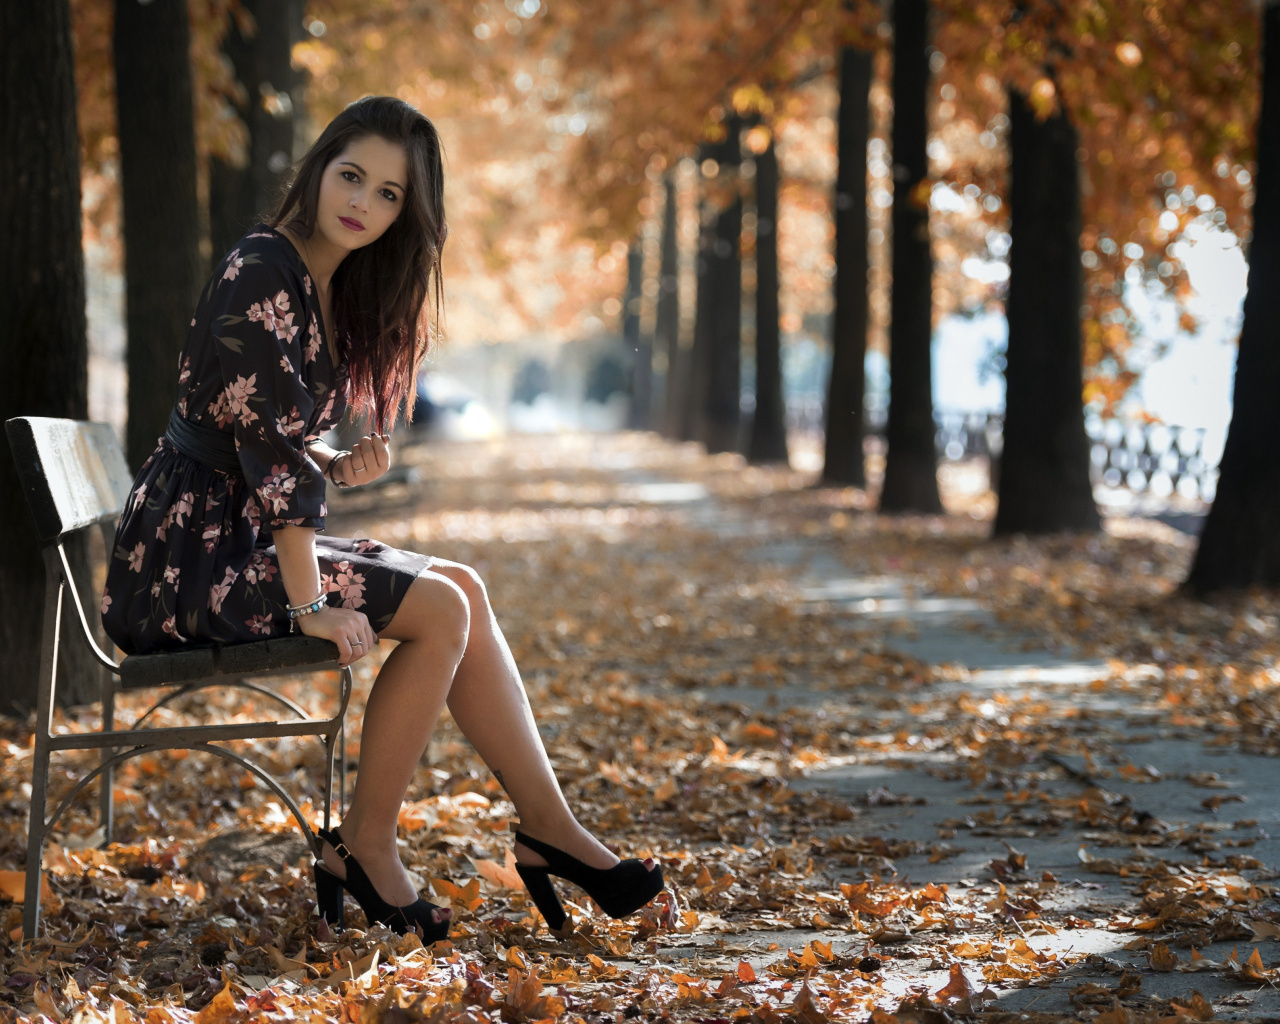 Caucasian joy girl in autumn park screenshot #1 1280x1024